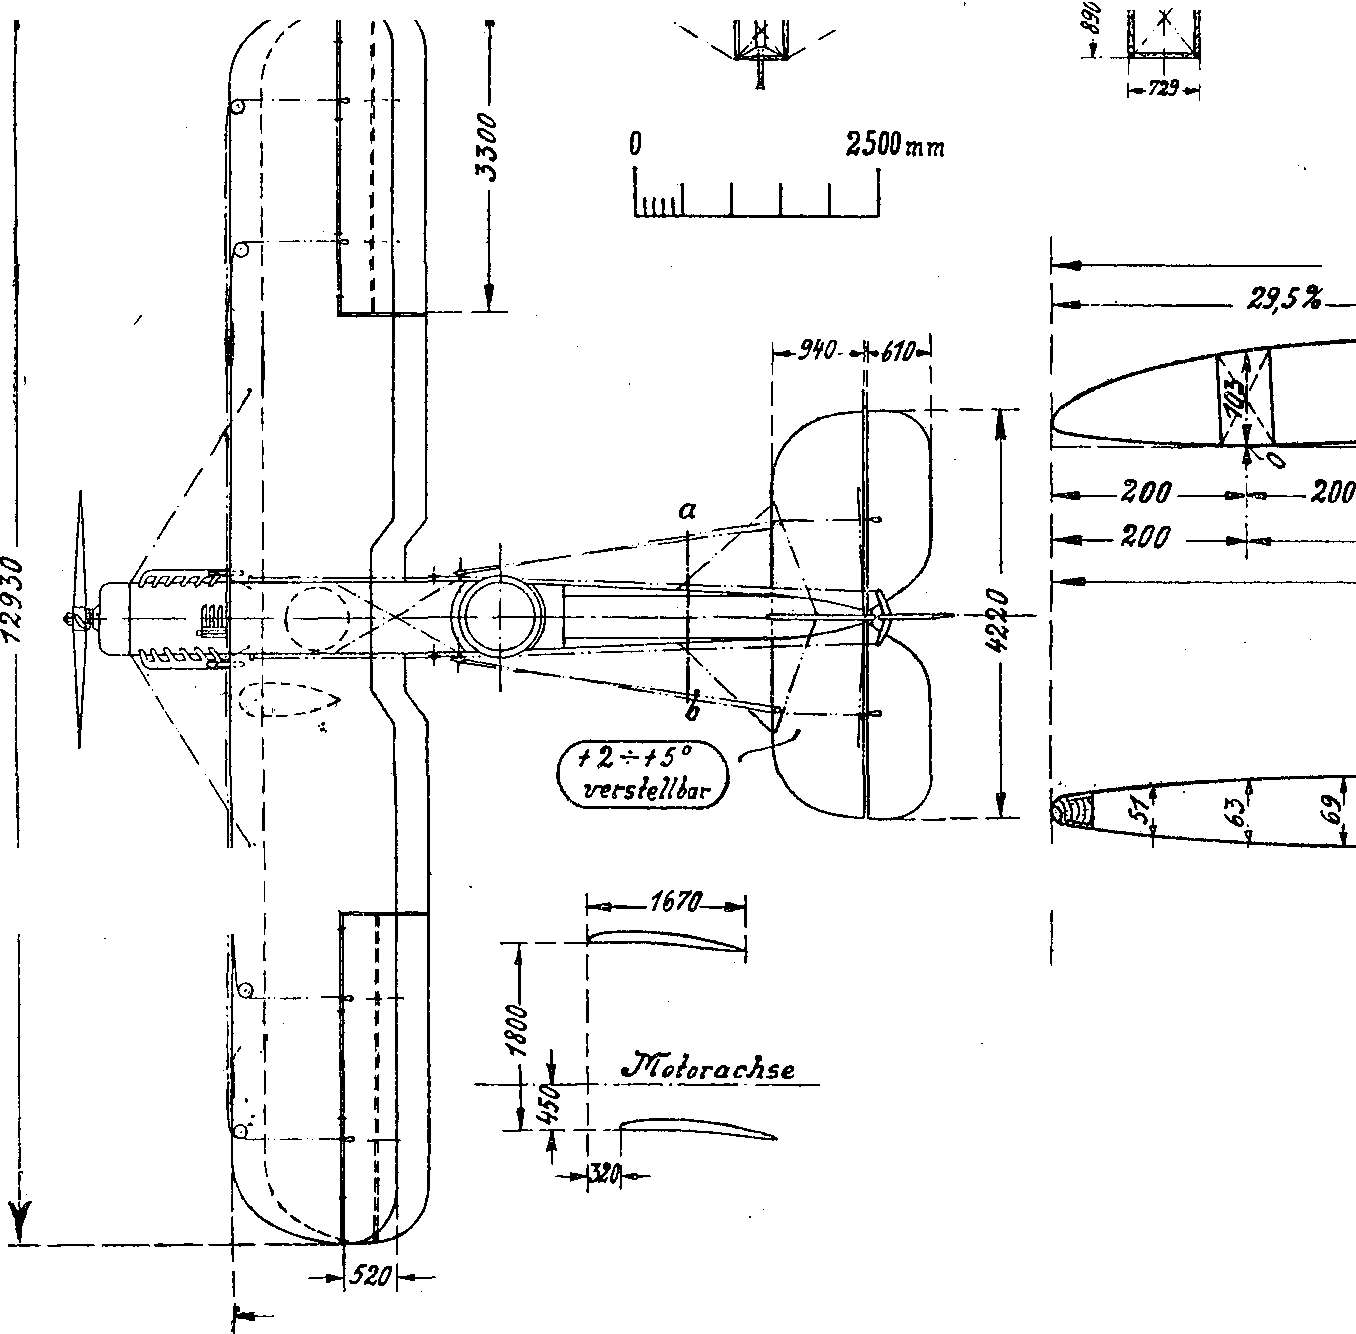 Reichswehr sowie Luftwaffe und Luftfahrt im Ersten Weltkrieg - Motorflug sowie Fliegerei und Flugzeuge im Jahre 1918